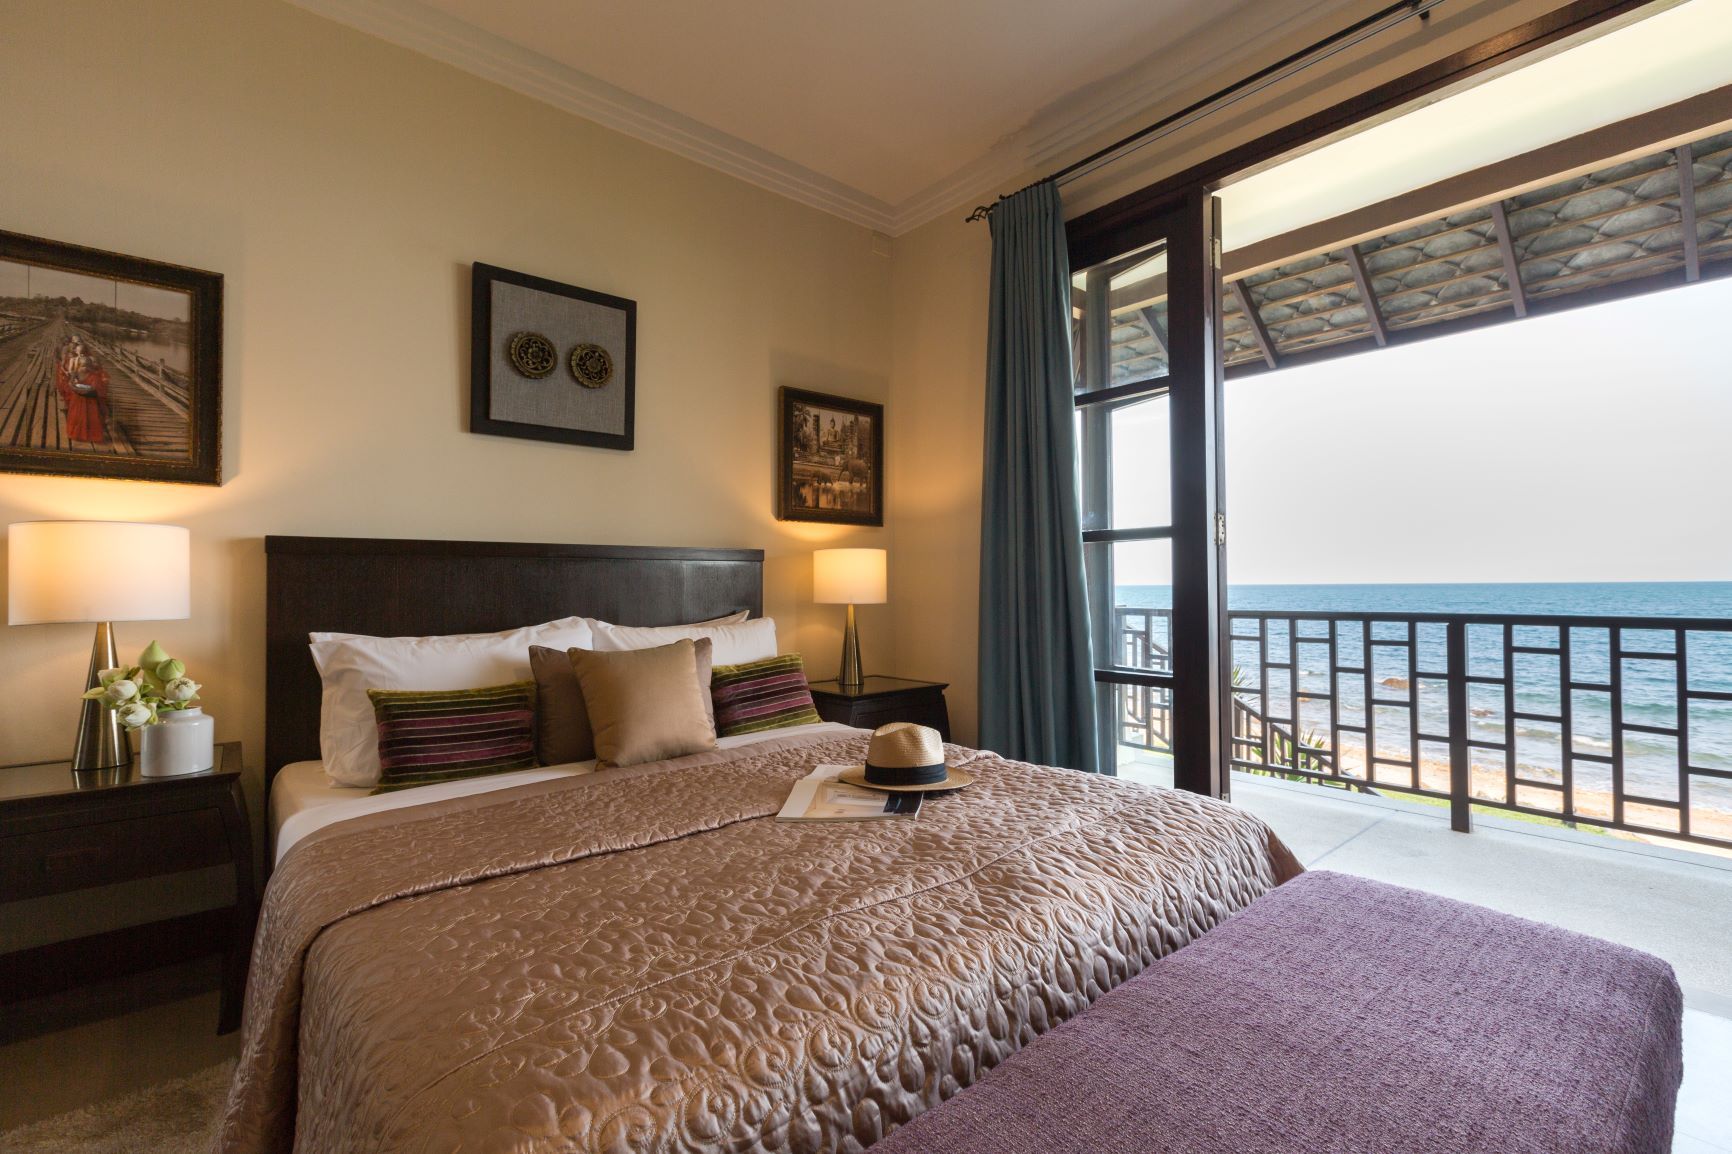 4 bedroom beachfront Villa in a 5-Star Resort: 4 bedroom beachfront Villa in a 5-Star Resort